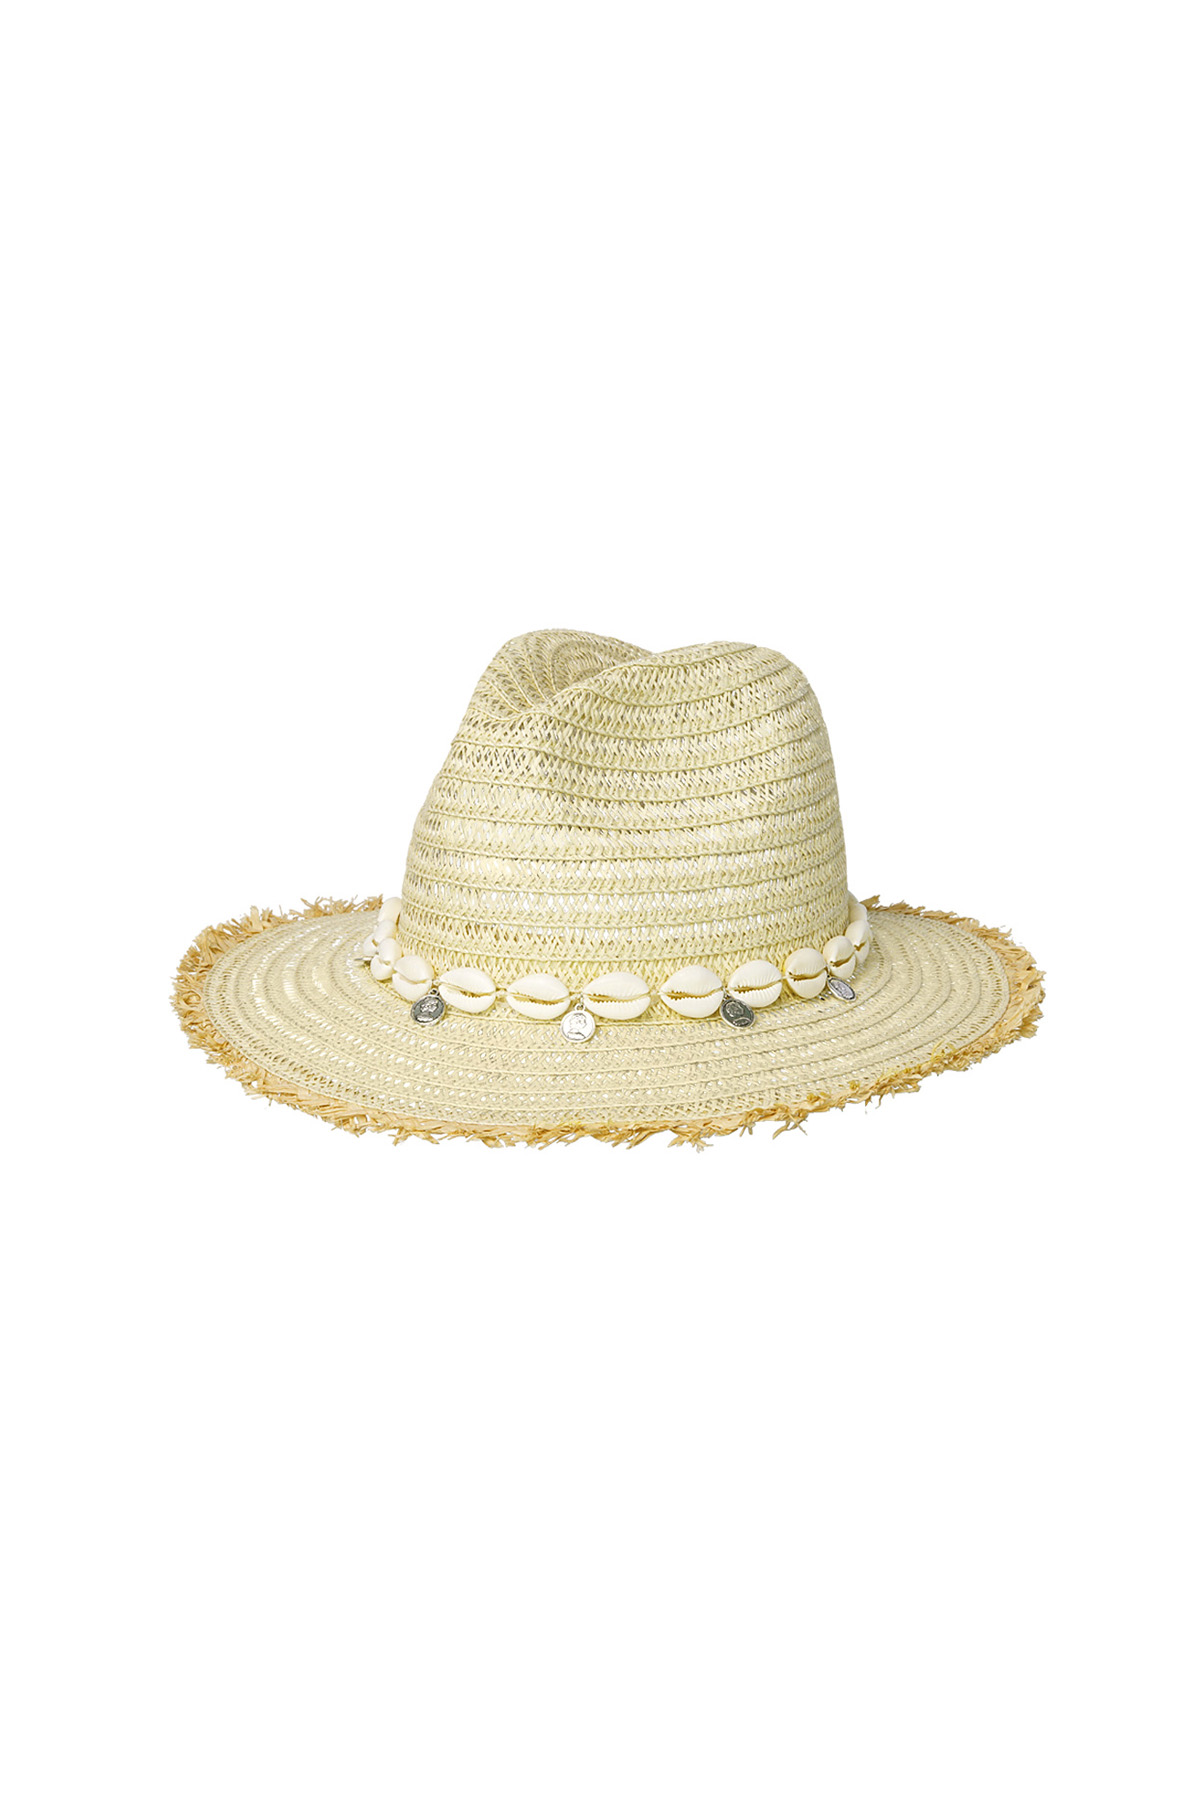 Yazlık şapka kabukları - kirli beyaz Kağıt